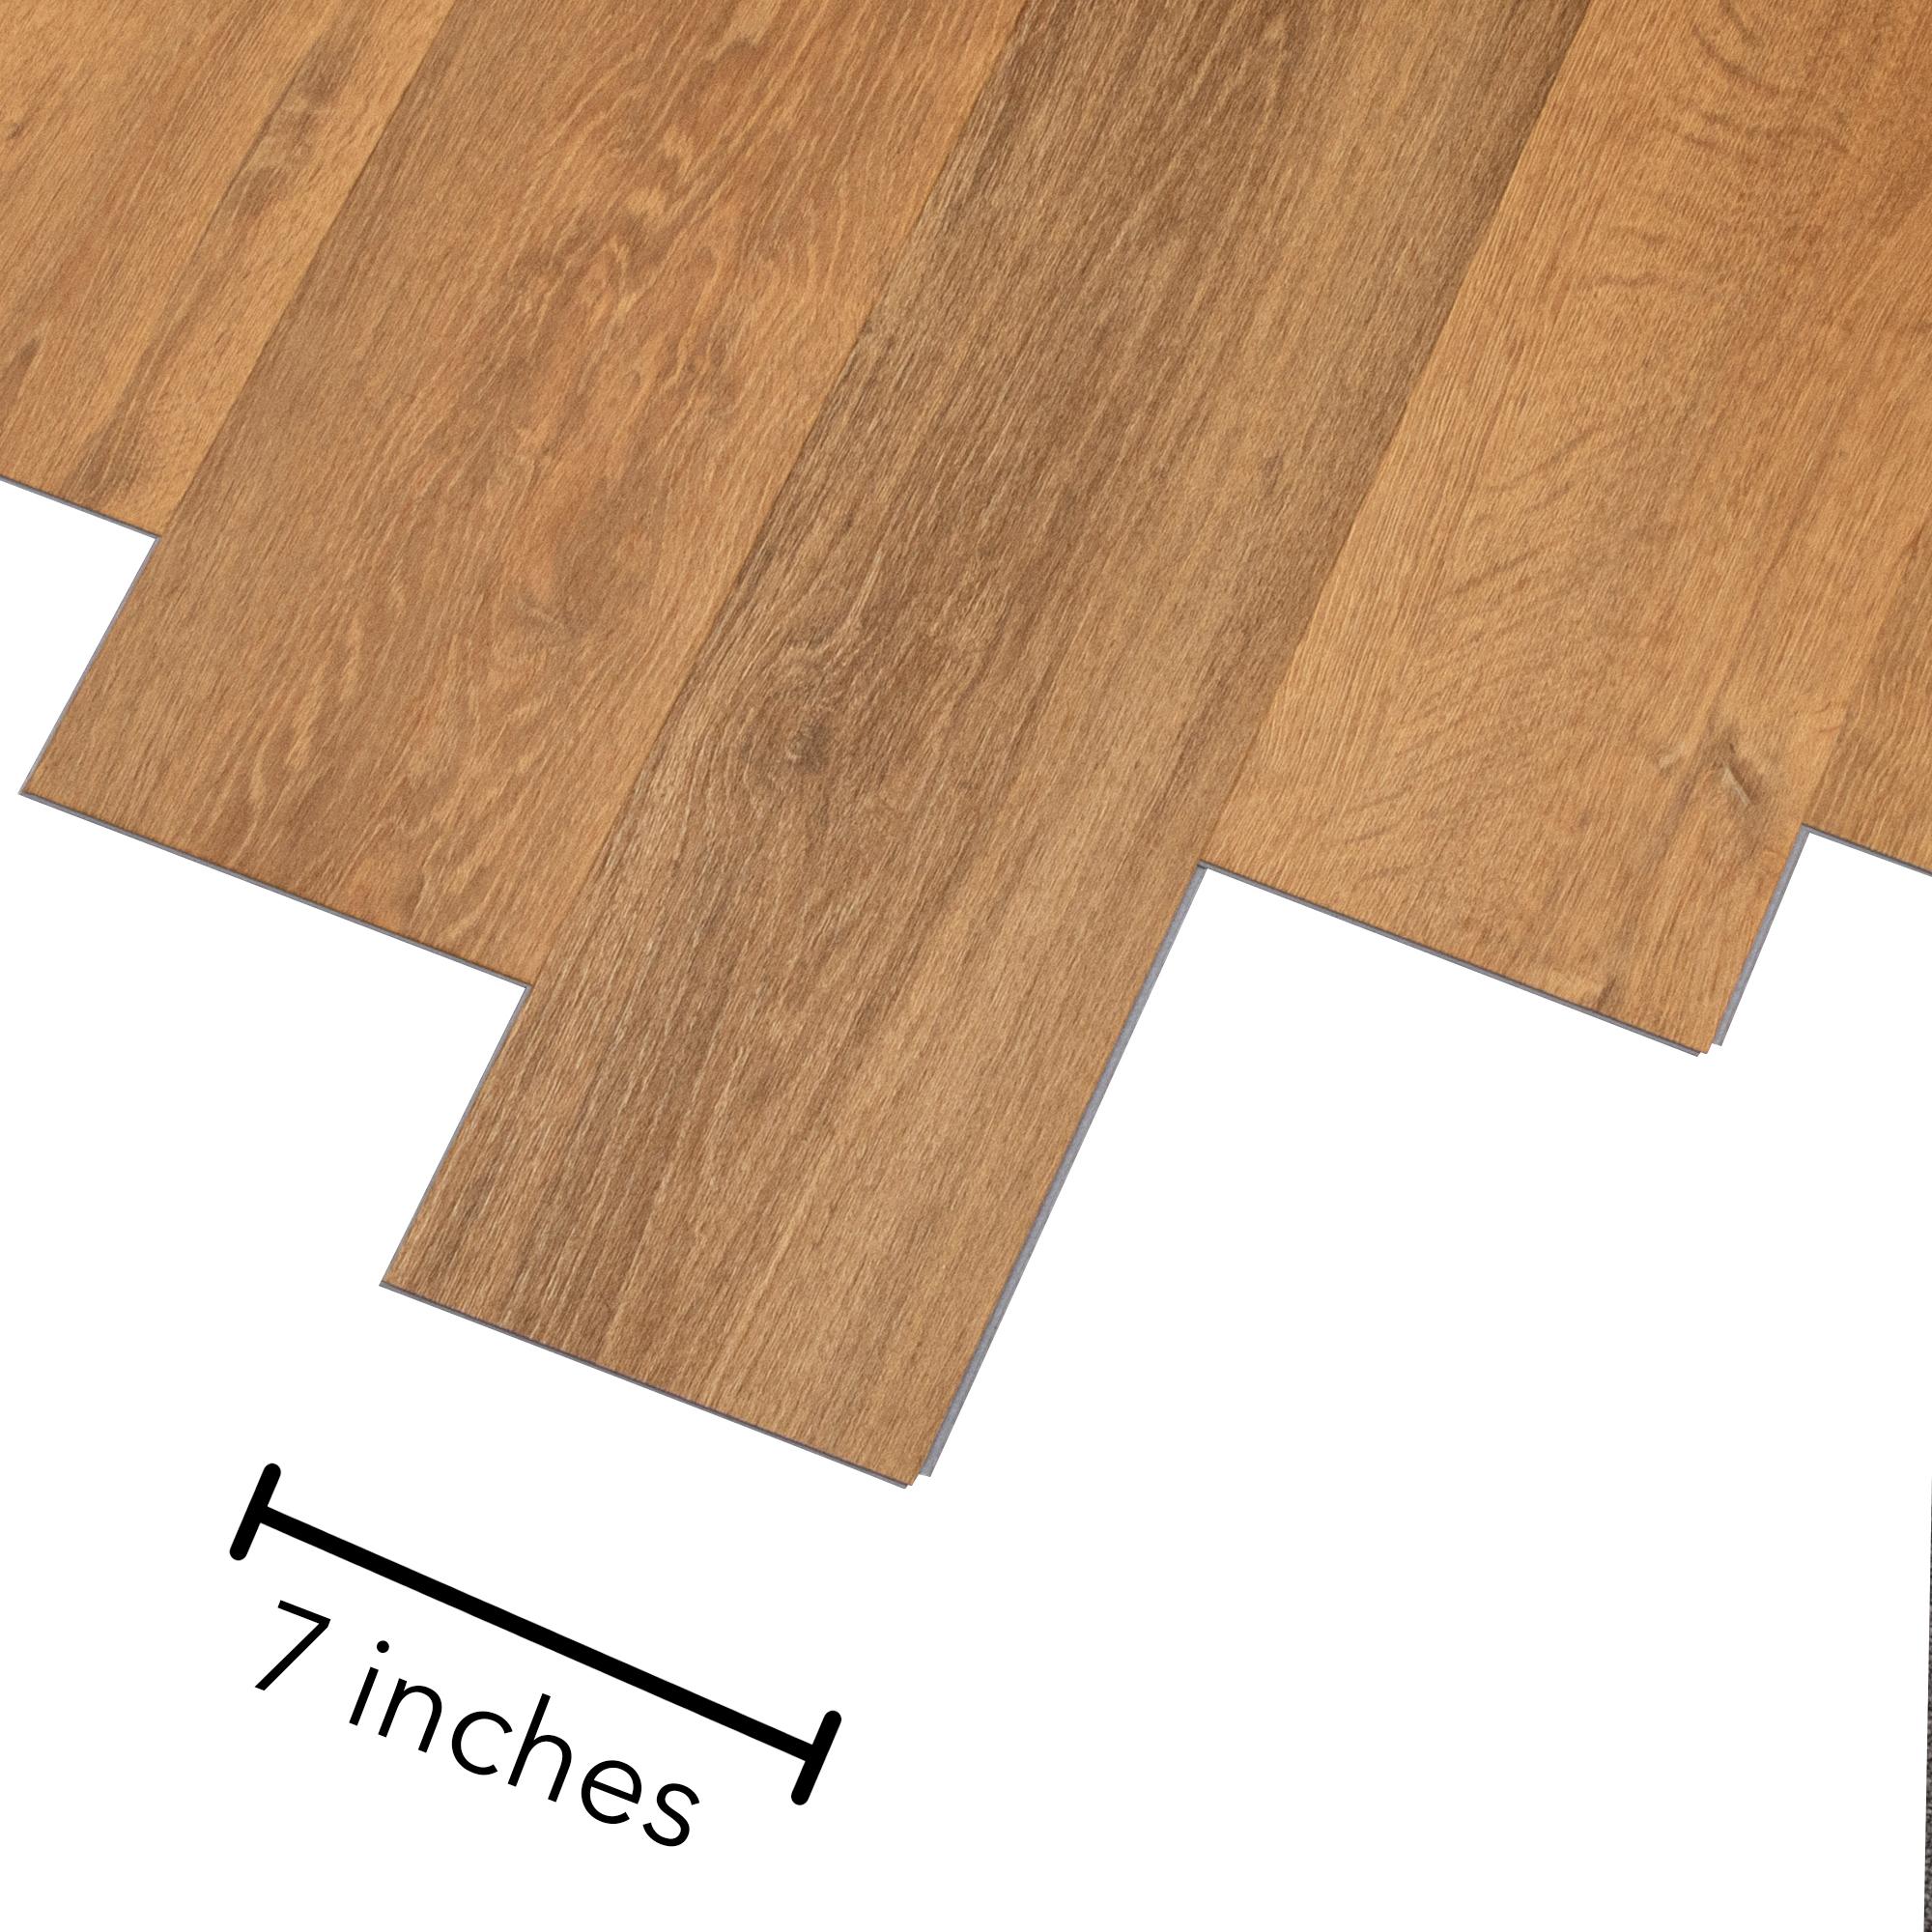 Mohawk 7.75x52 Waterproof Vinyl Plank Flooring in Pure Wheat Oak 4.2 mm  (26.91-sqft)/Carton) 